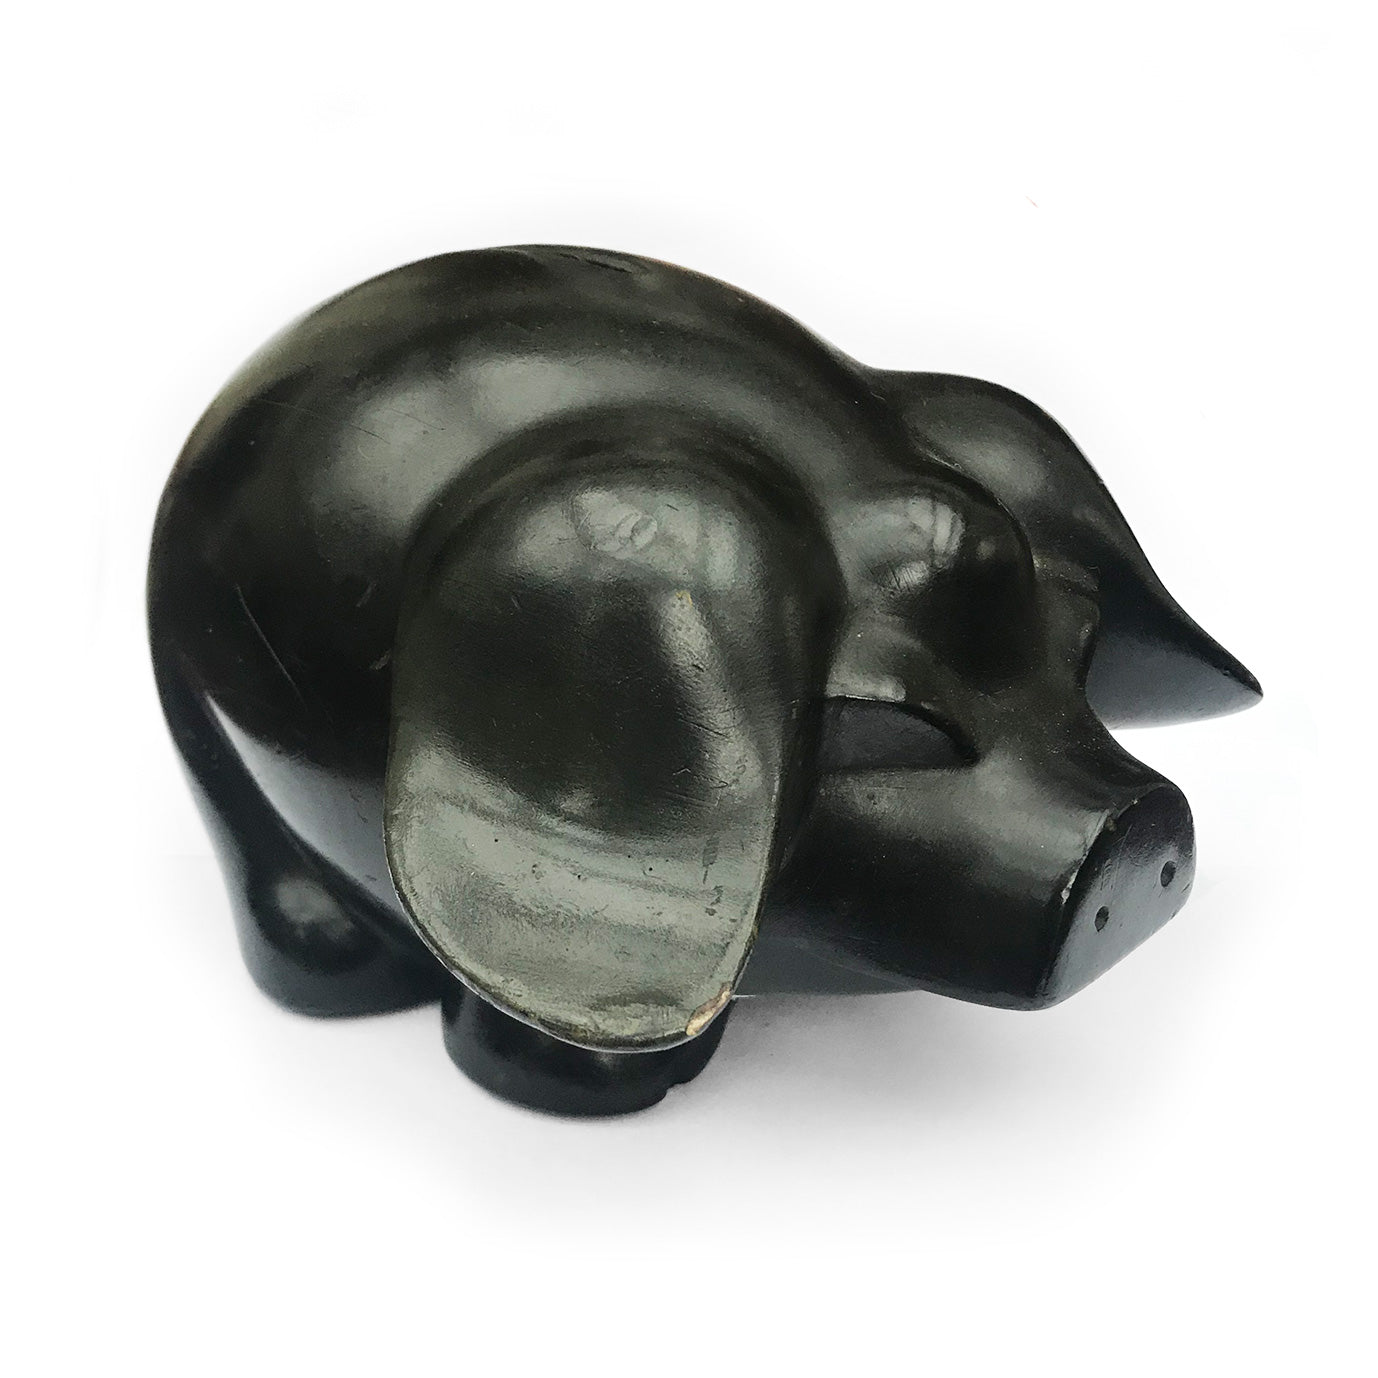 Lovely vintage black piggy bank - SHOP NOW - www.intovintage.co.uk